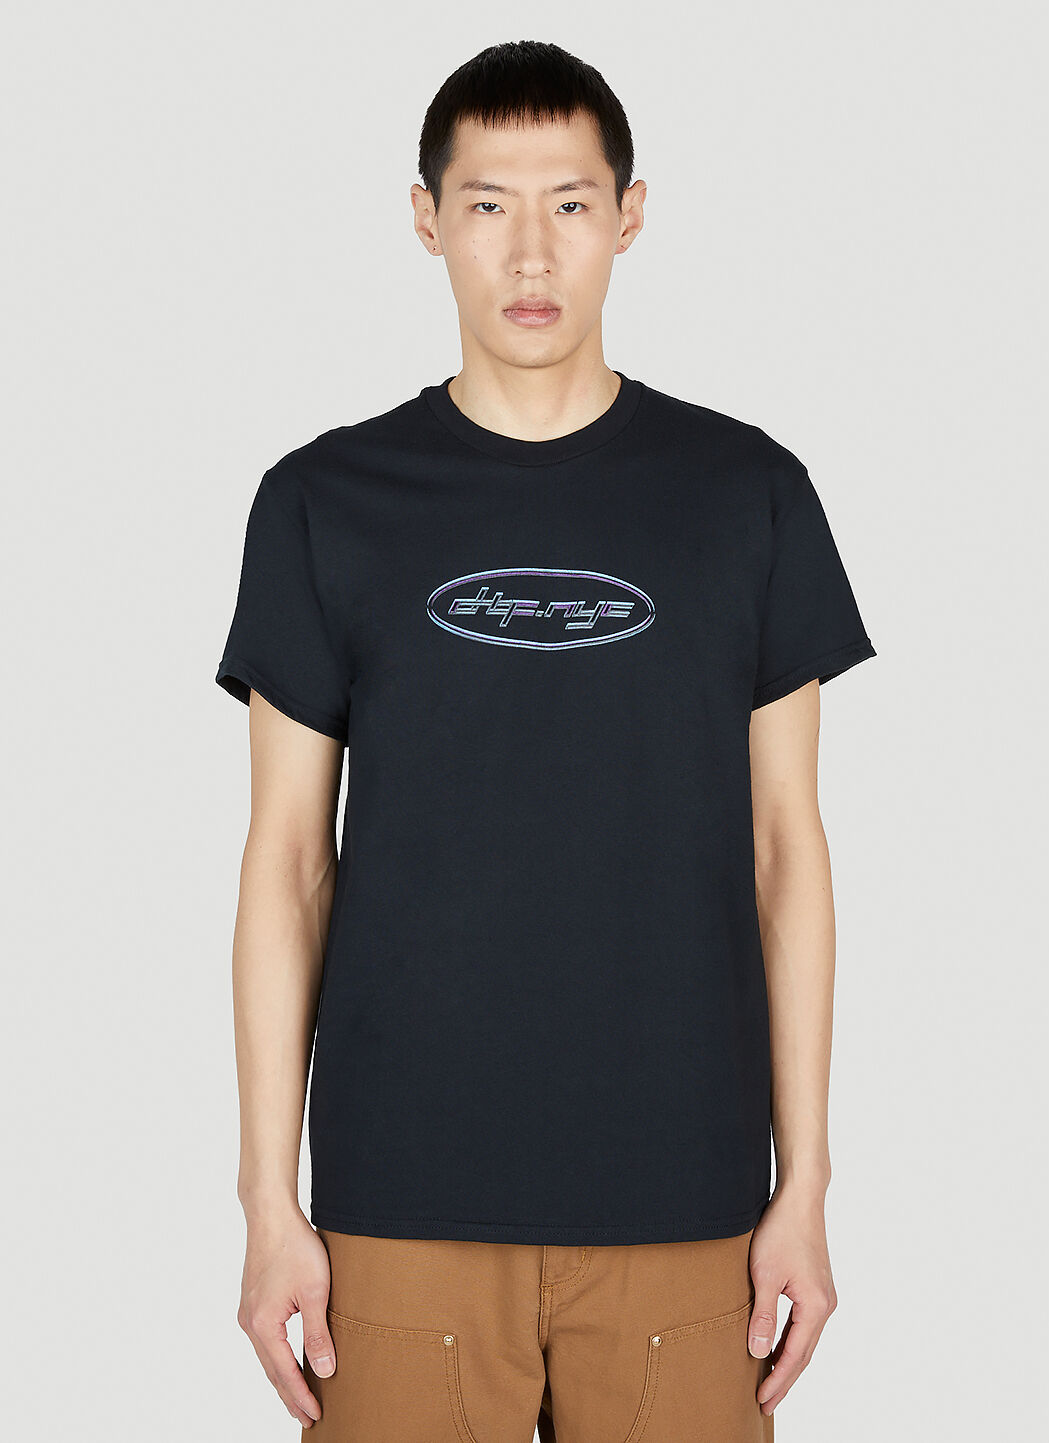 DTF.NYC 사이버 로고 반소매 티셔츠 블랙 dtf0152004